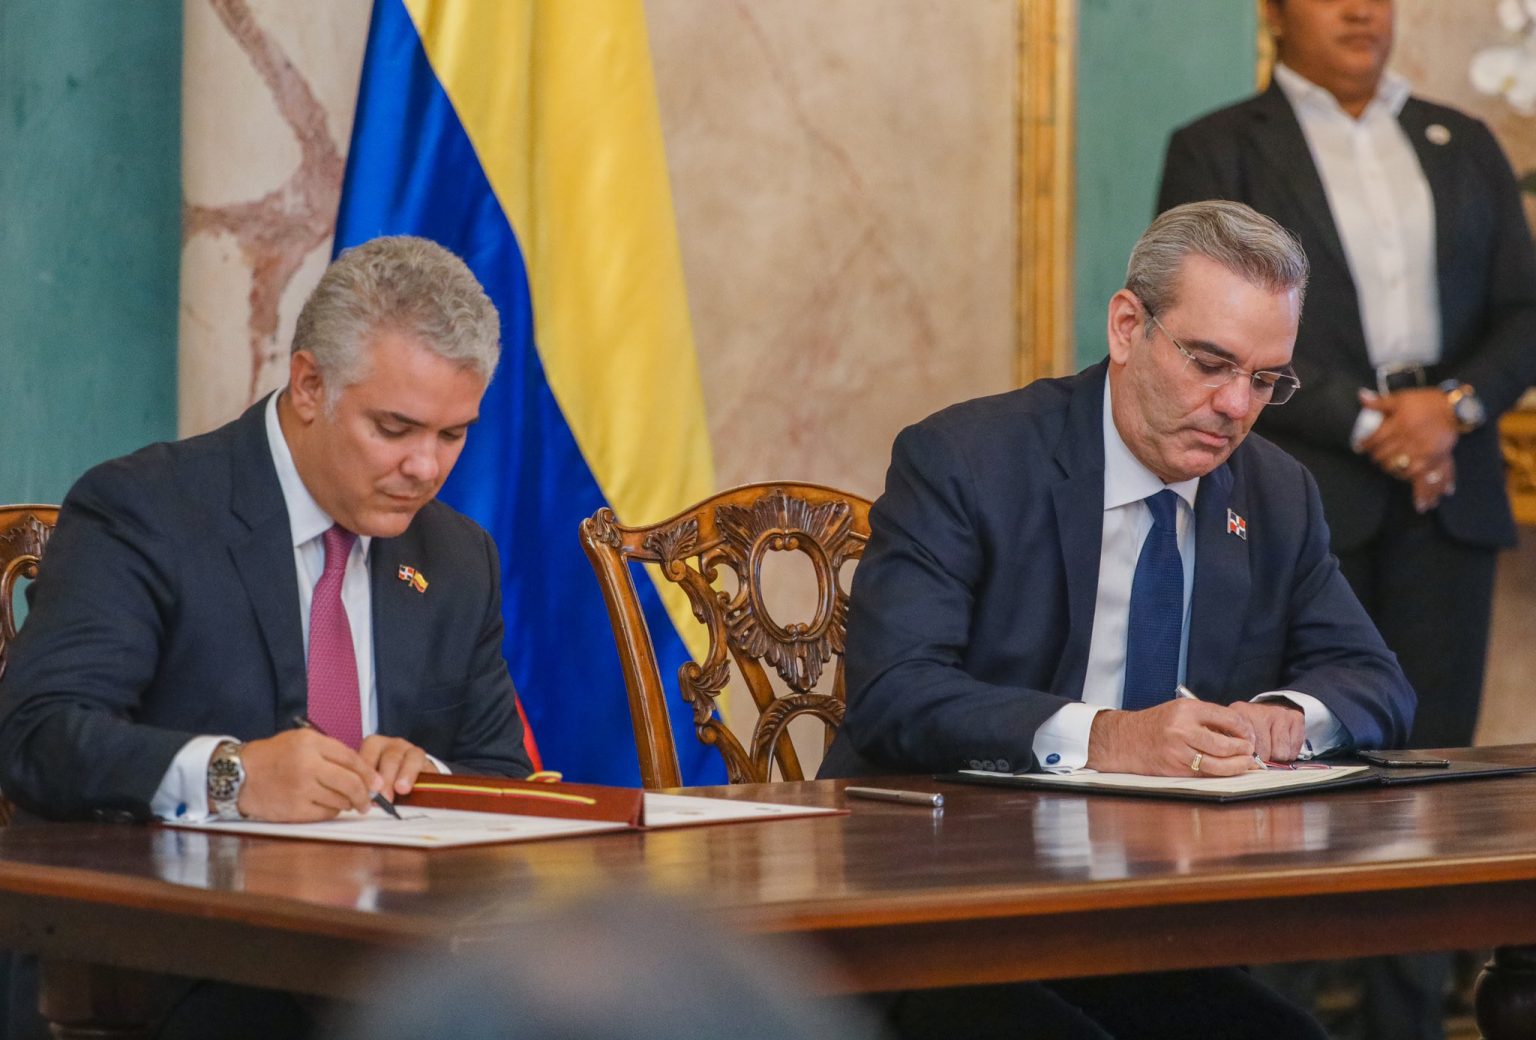 Republica Dominicana y Colombia firman 5 acuerdos durante visita de Duque a el pias